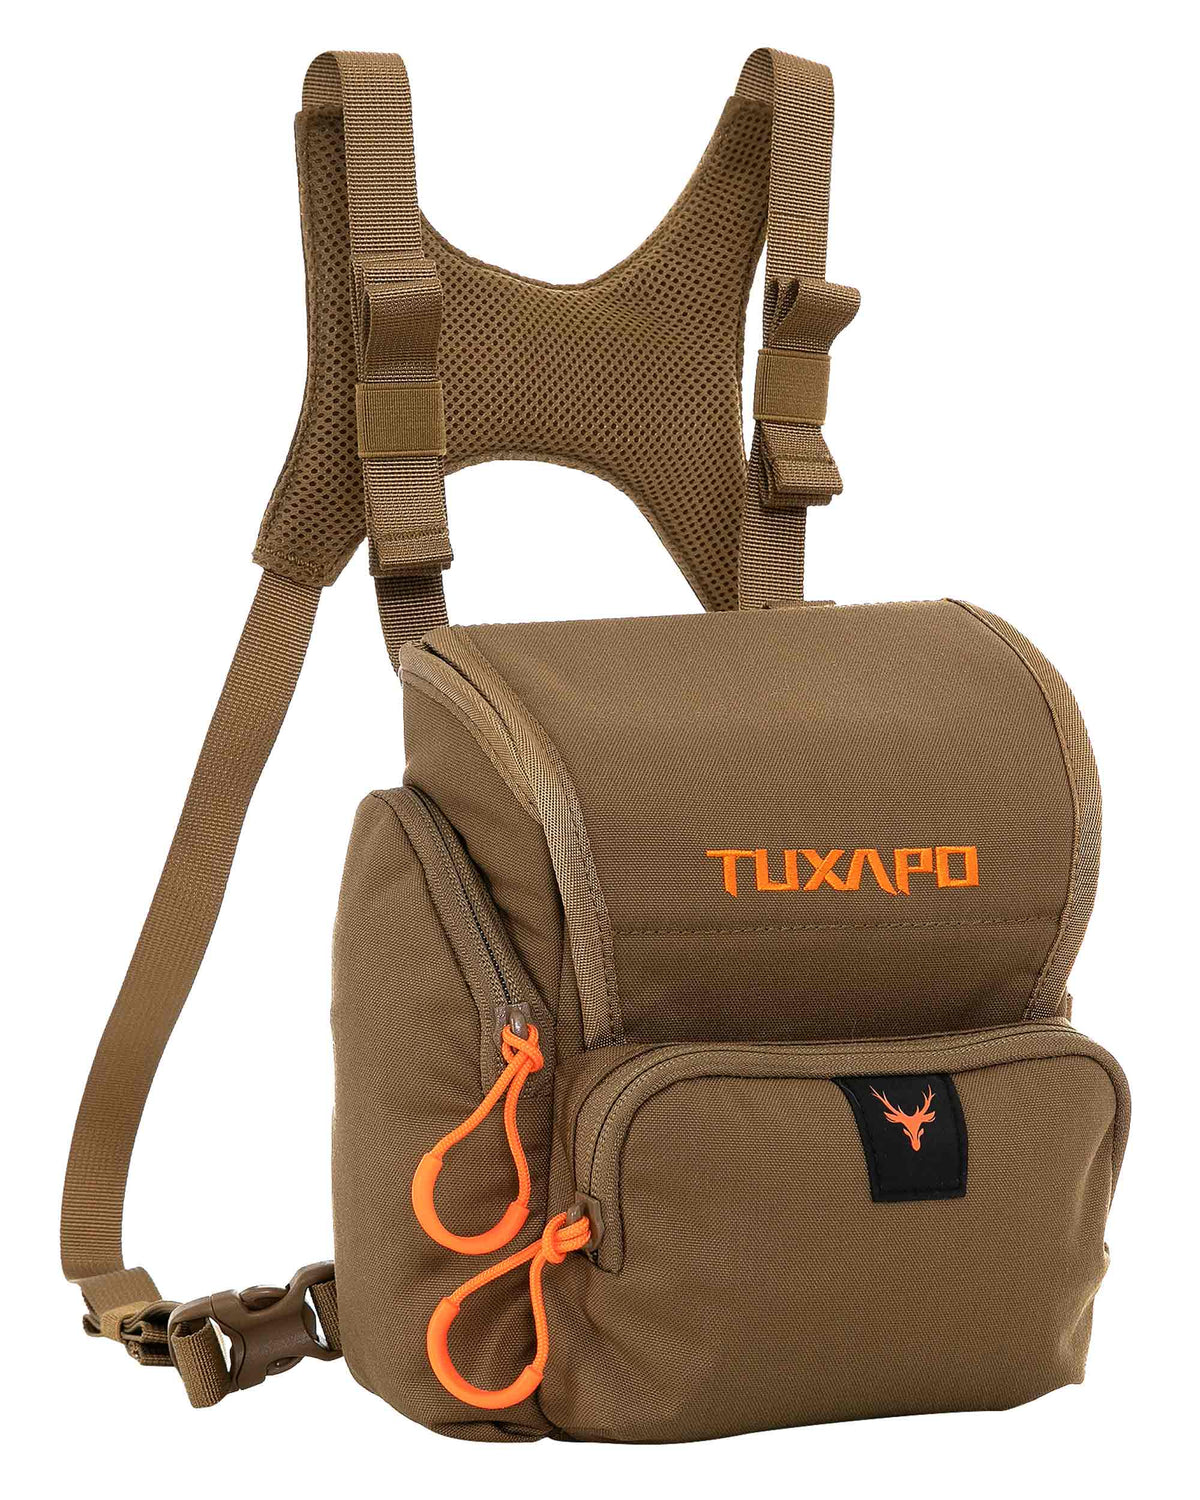 Tuxapo Binocular Harness Chest Pack with Rangefinder Pouch Bino Case